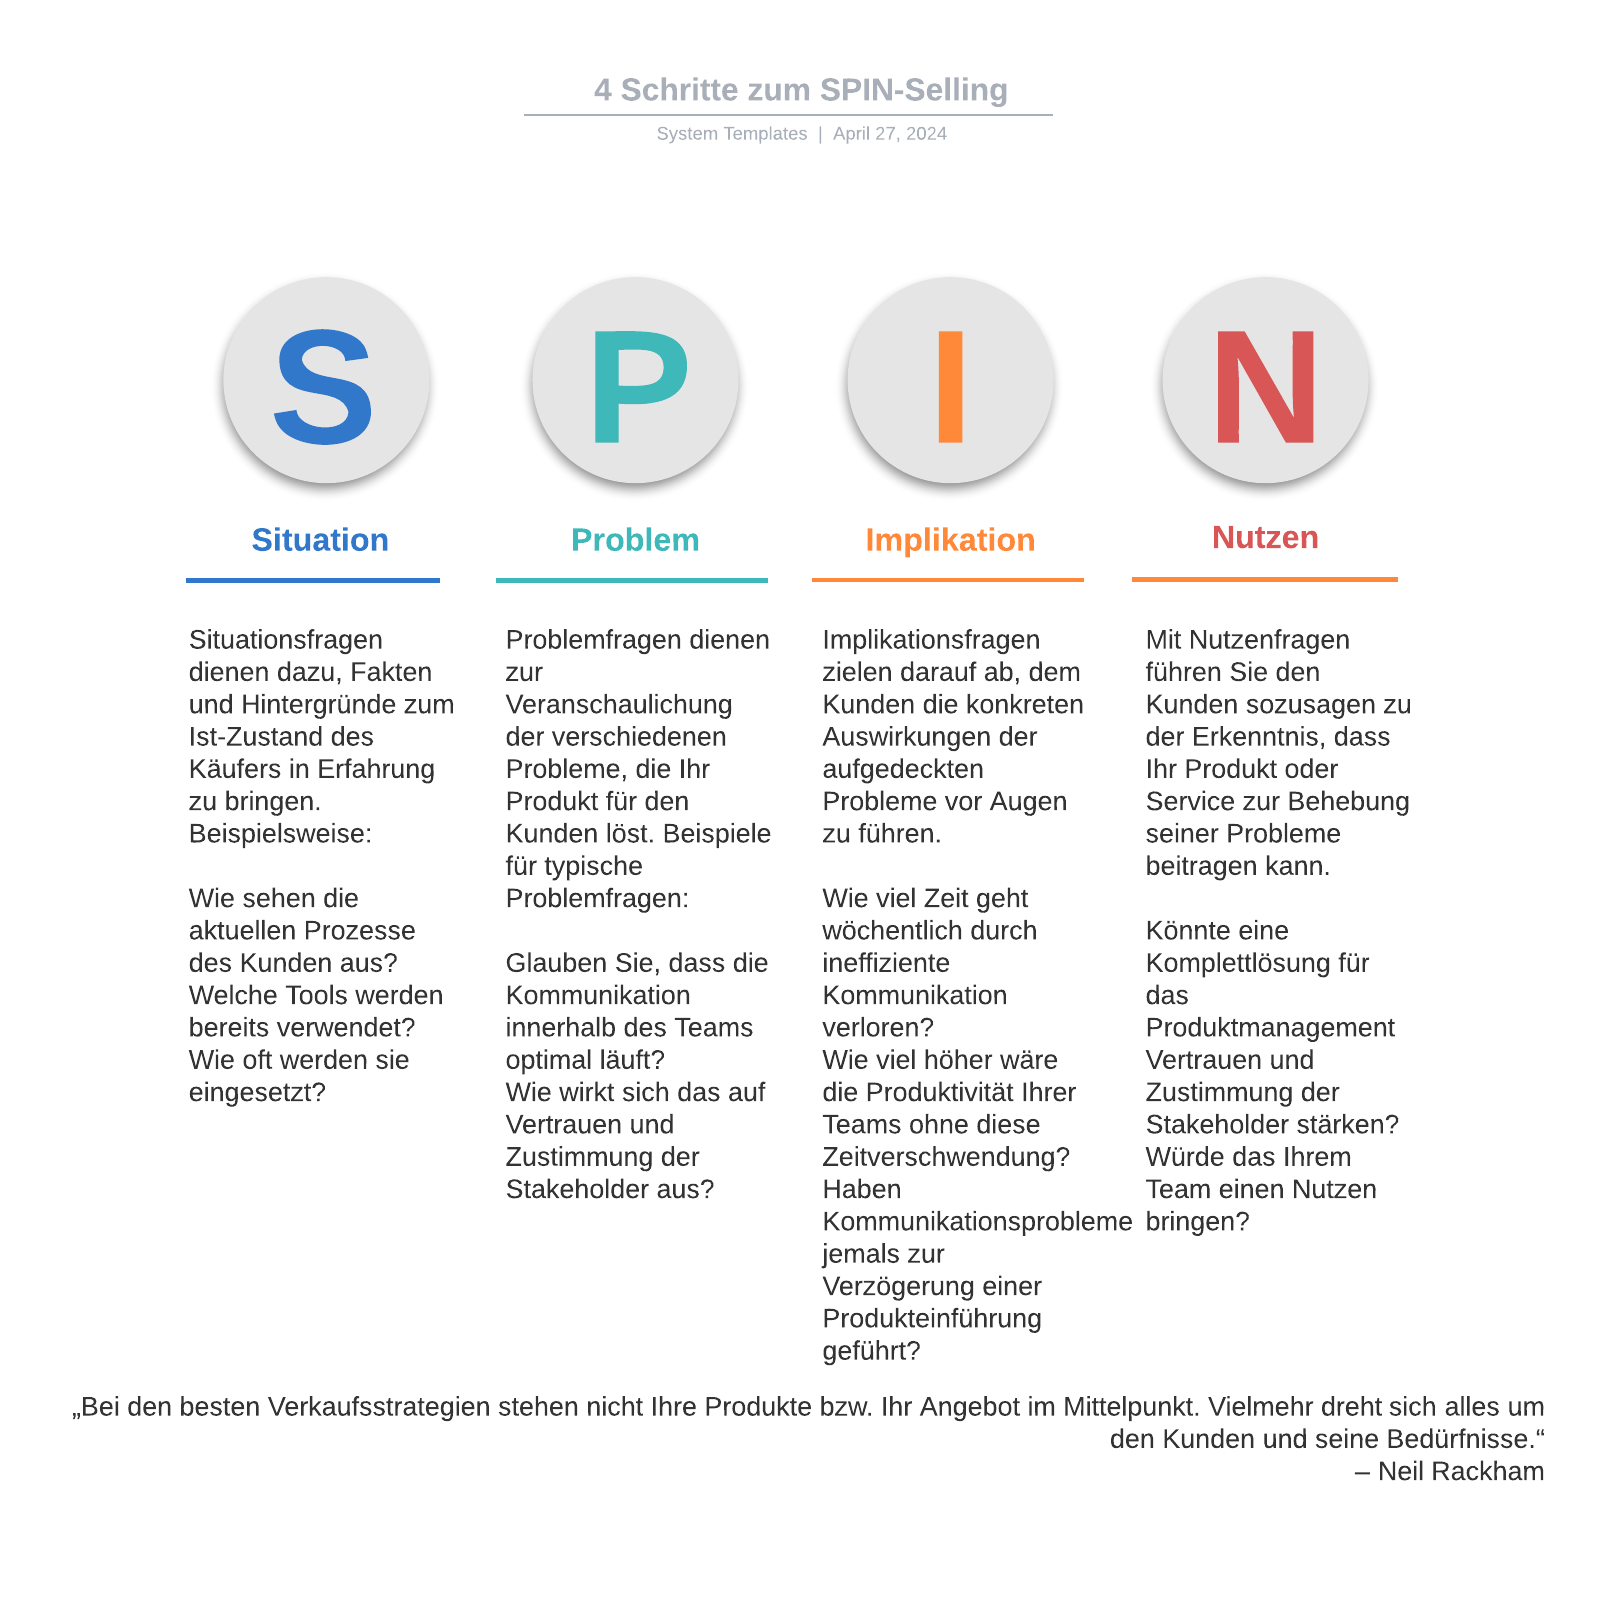 4 Schritte zum SPIN-Selling